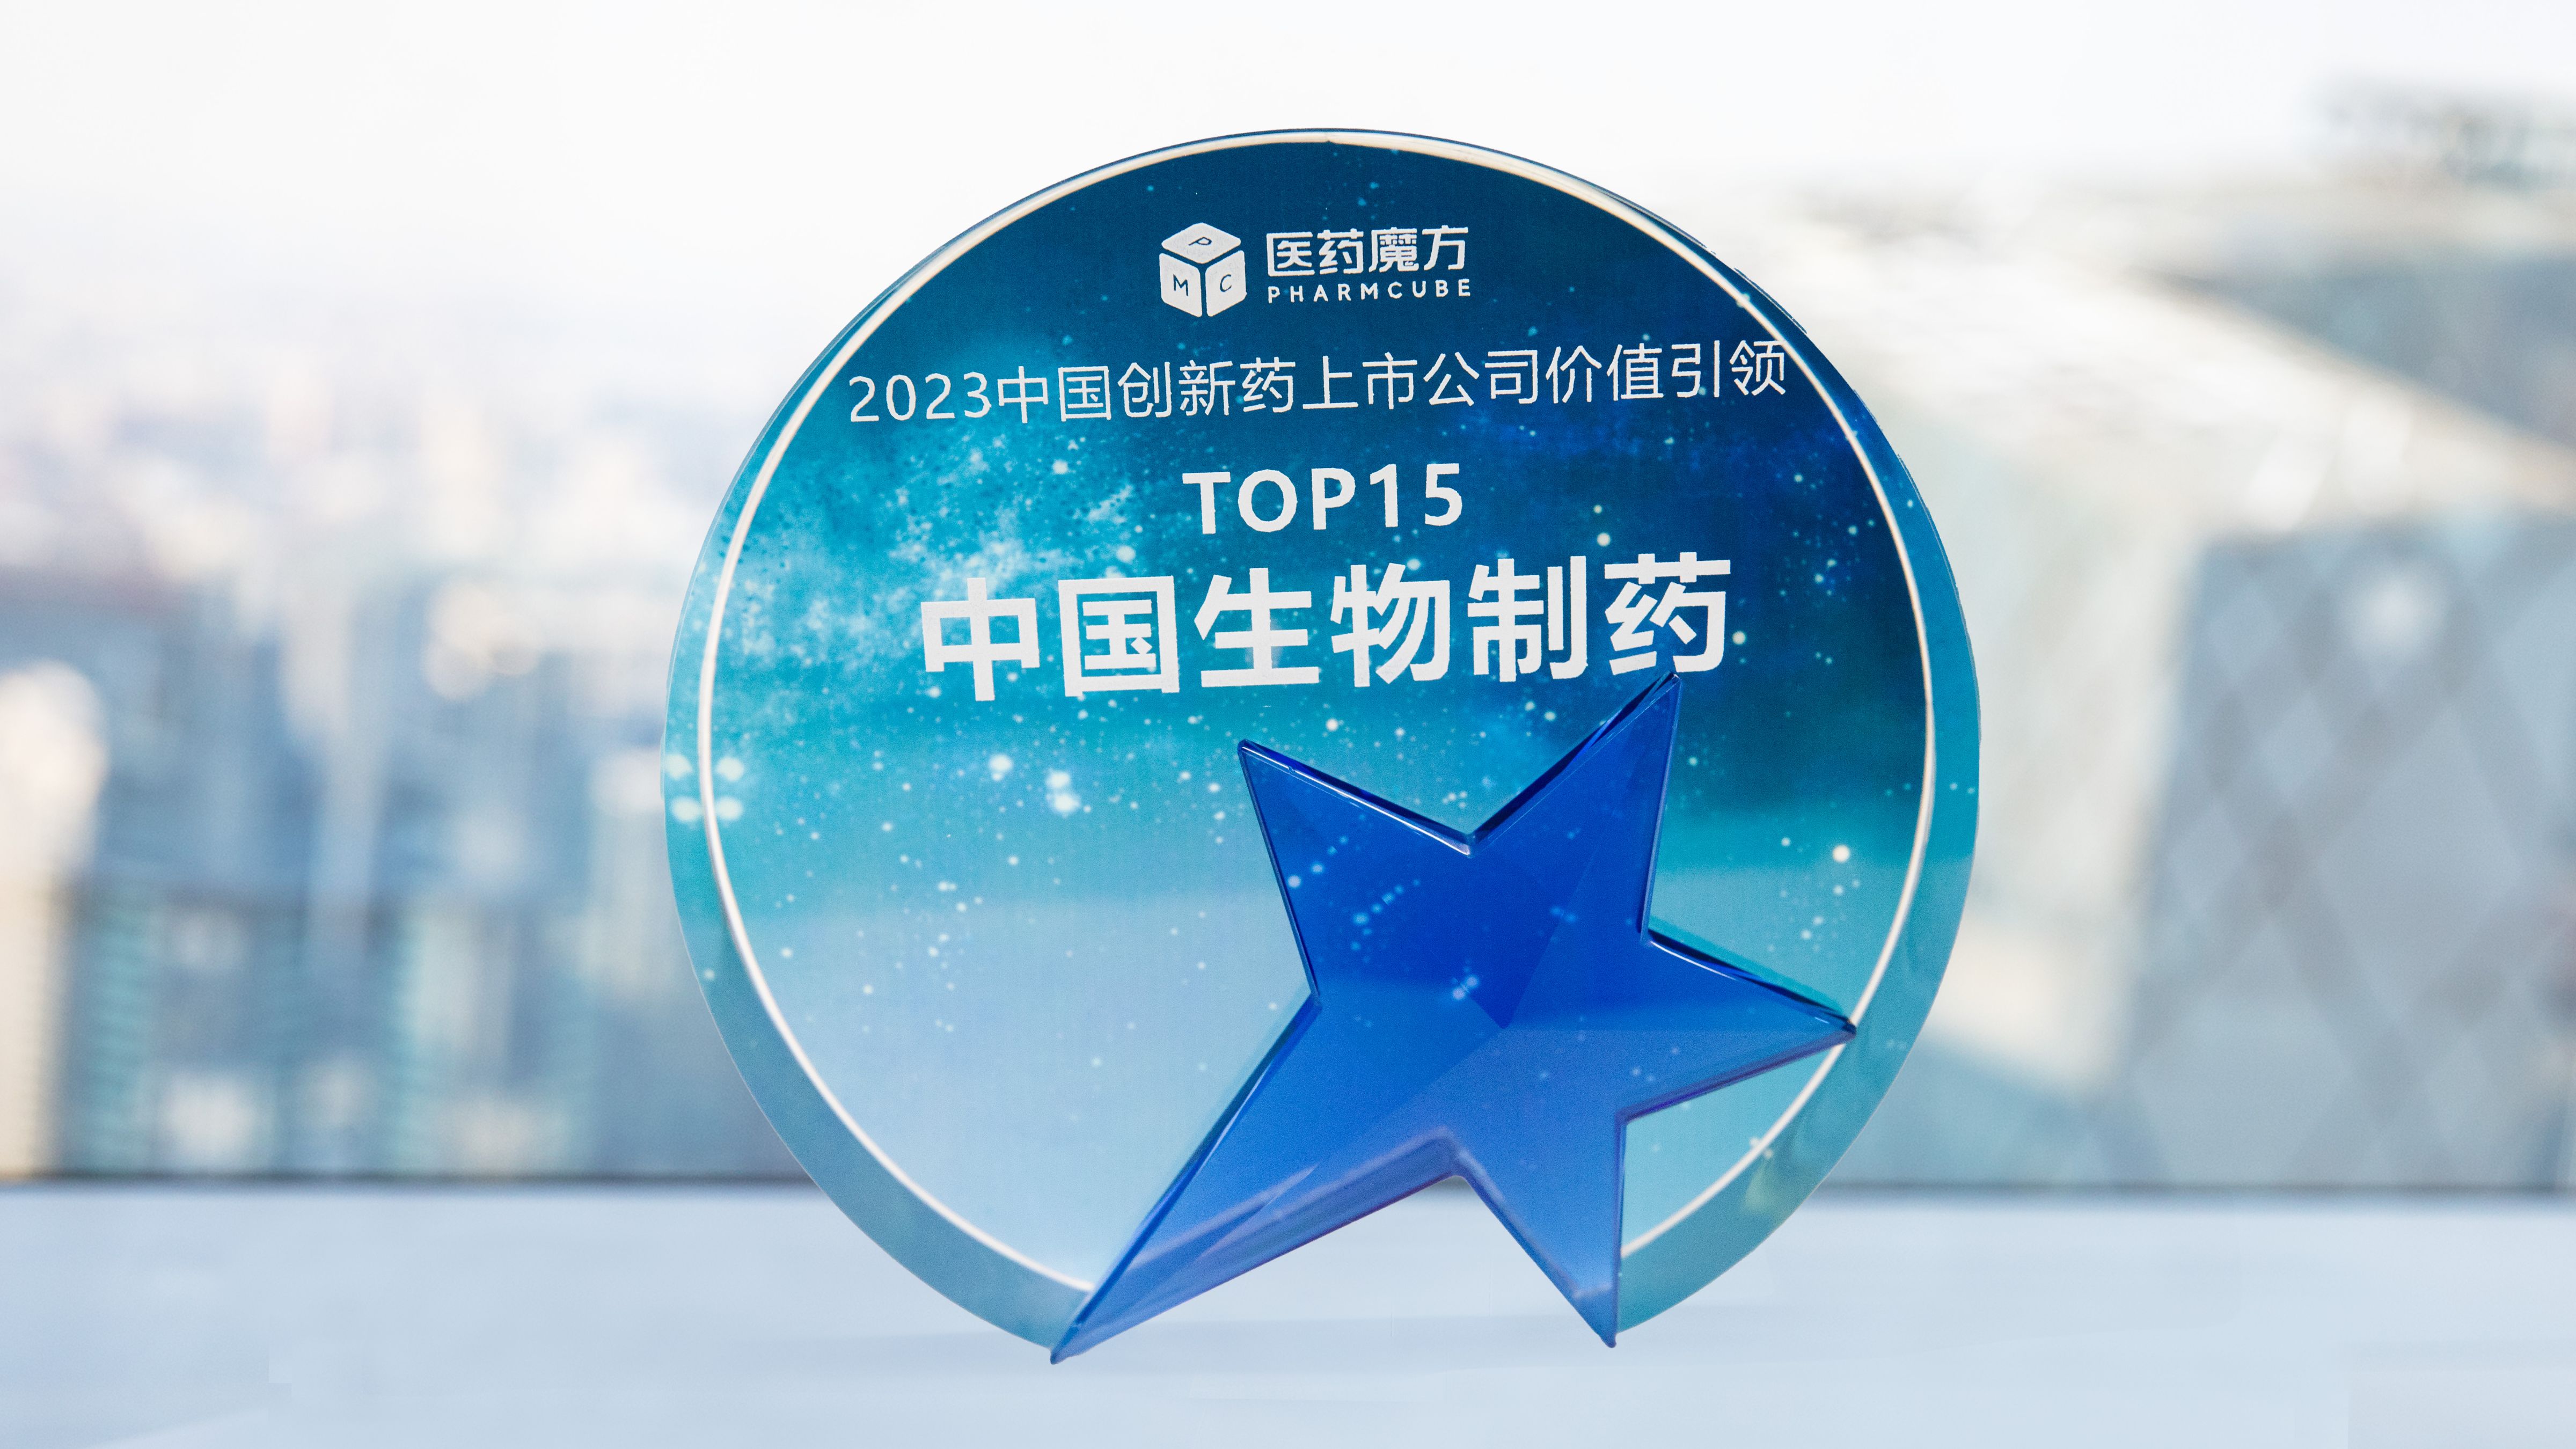 荣誉+1! 中国生物制药获评 “中国创新药上市公司价值引领TOP15”